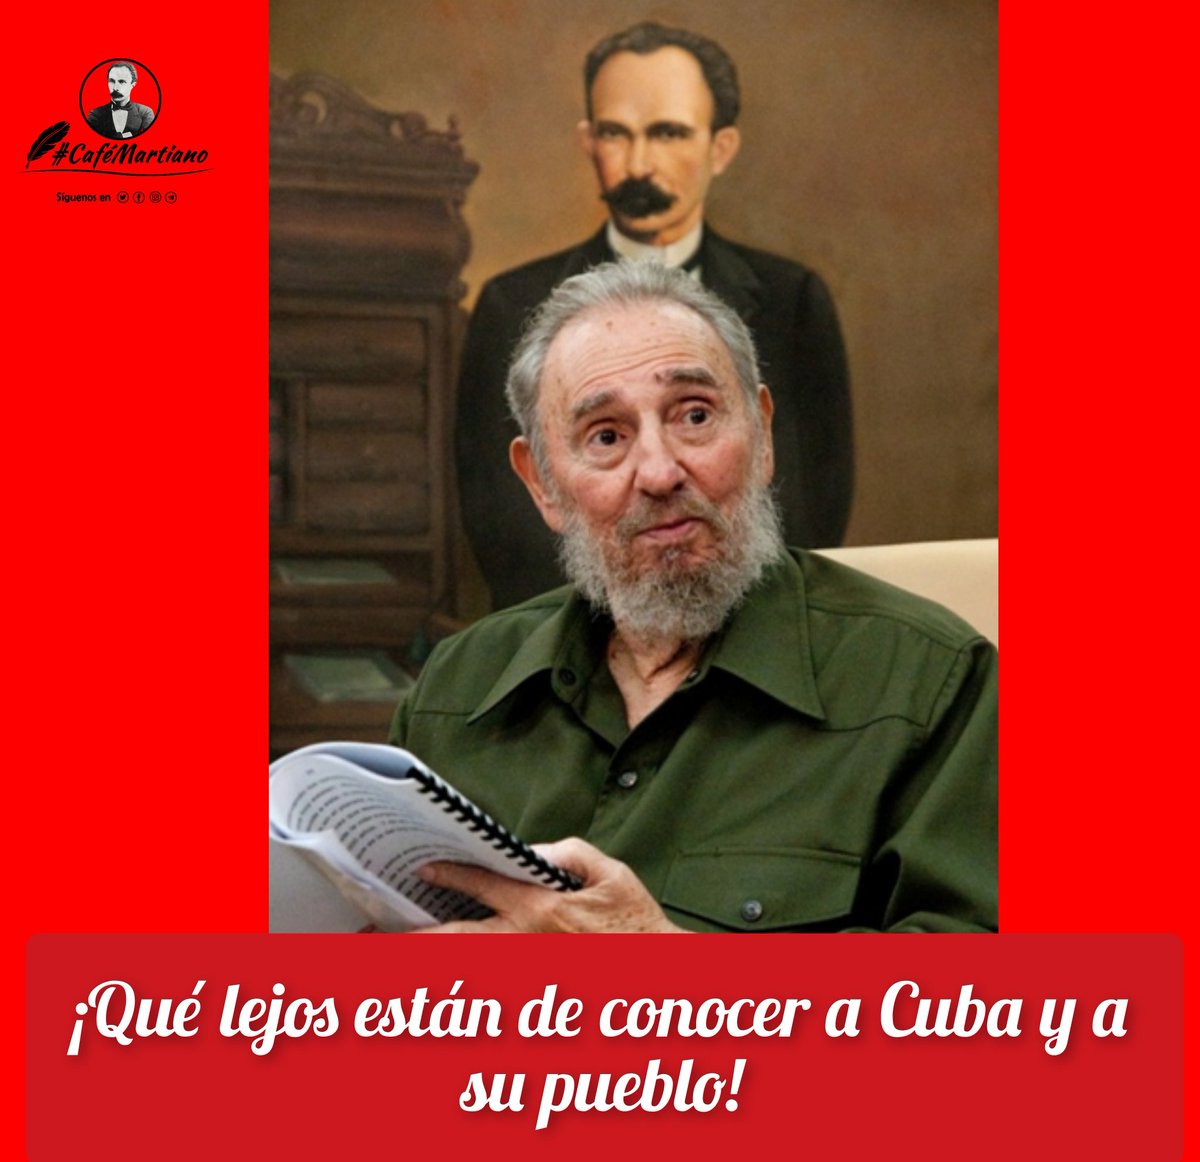 @cafemartiano @DiazCanelB @InesMChapman @YaquedeCuba @EVilluendasC @agnes_becerra @ValoresTeam1 @QbaDCorazon_ @PartidoPCC @TeresaBoue @GHNordelo5 Buenos días #CaféMartiano, jamás teaicionaremos la gloria que se ha vivido, defenderemos la libertad a cualquier precio. Cuba es hoy faro y guía de América Latina, cuando afirmamos junto a Martí: ✍️'Patria es humanidad '. #CubaViveEnSuHistoria